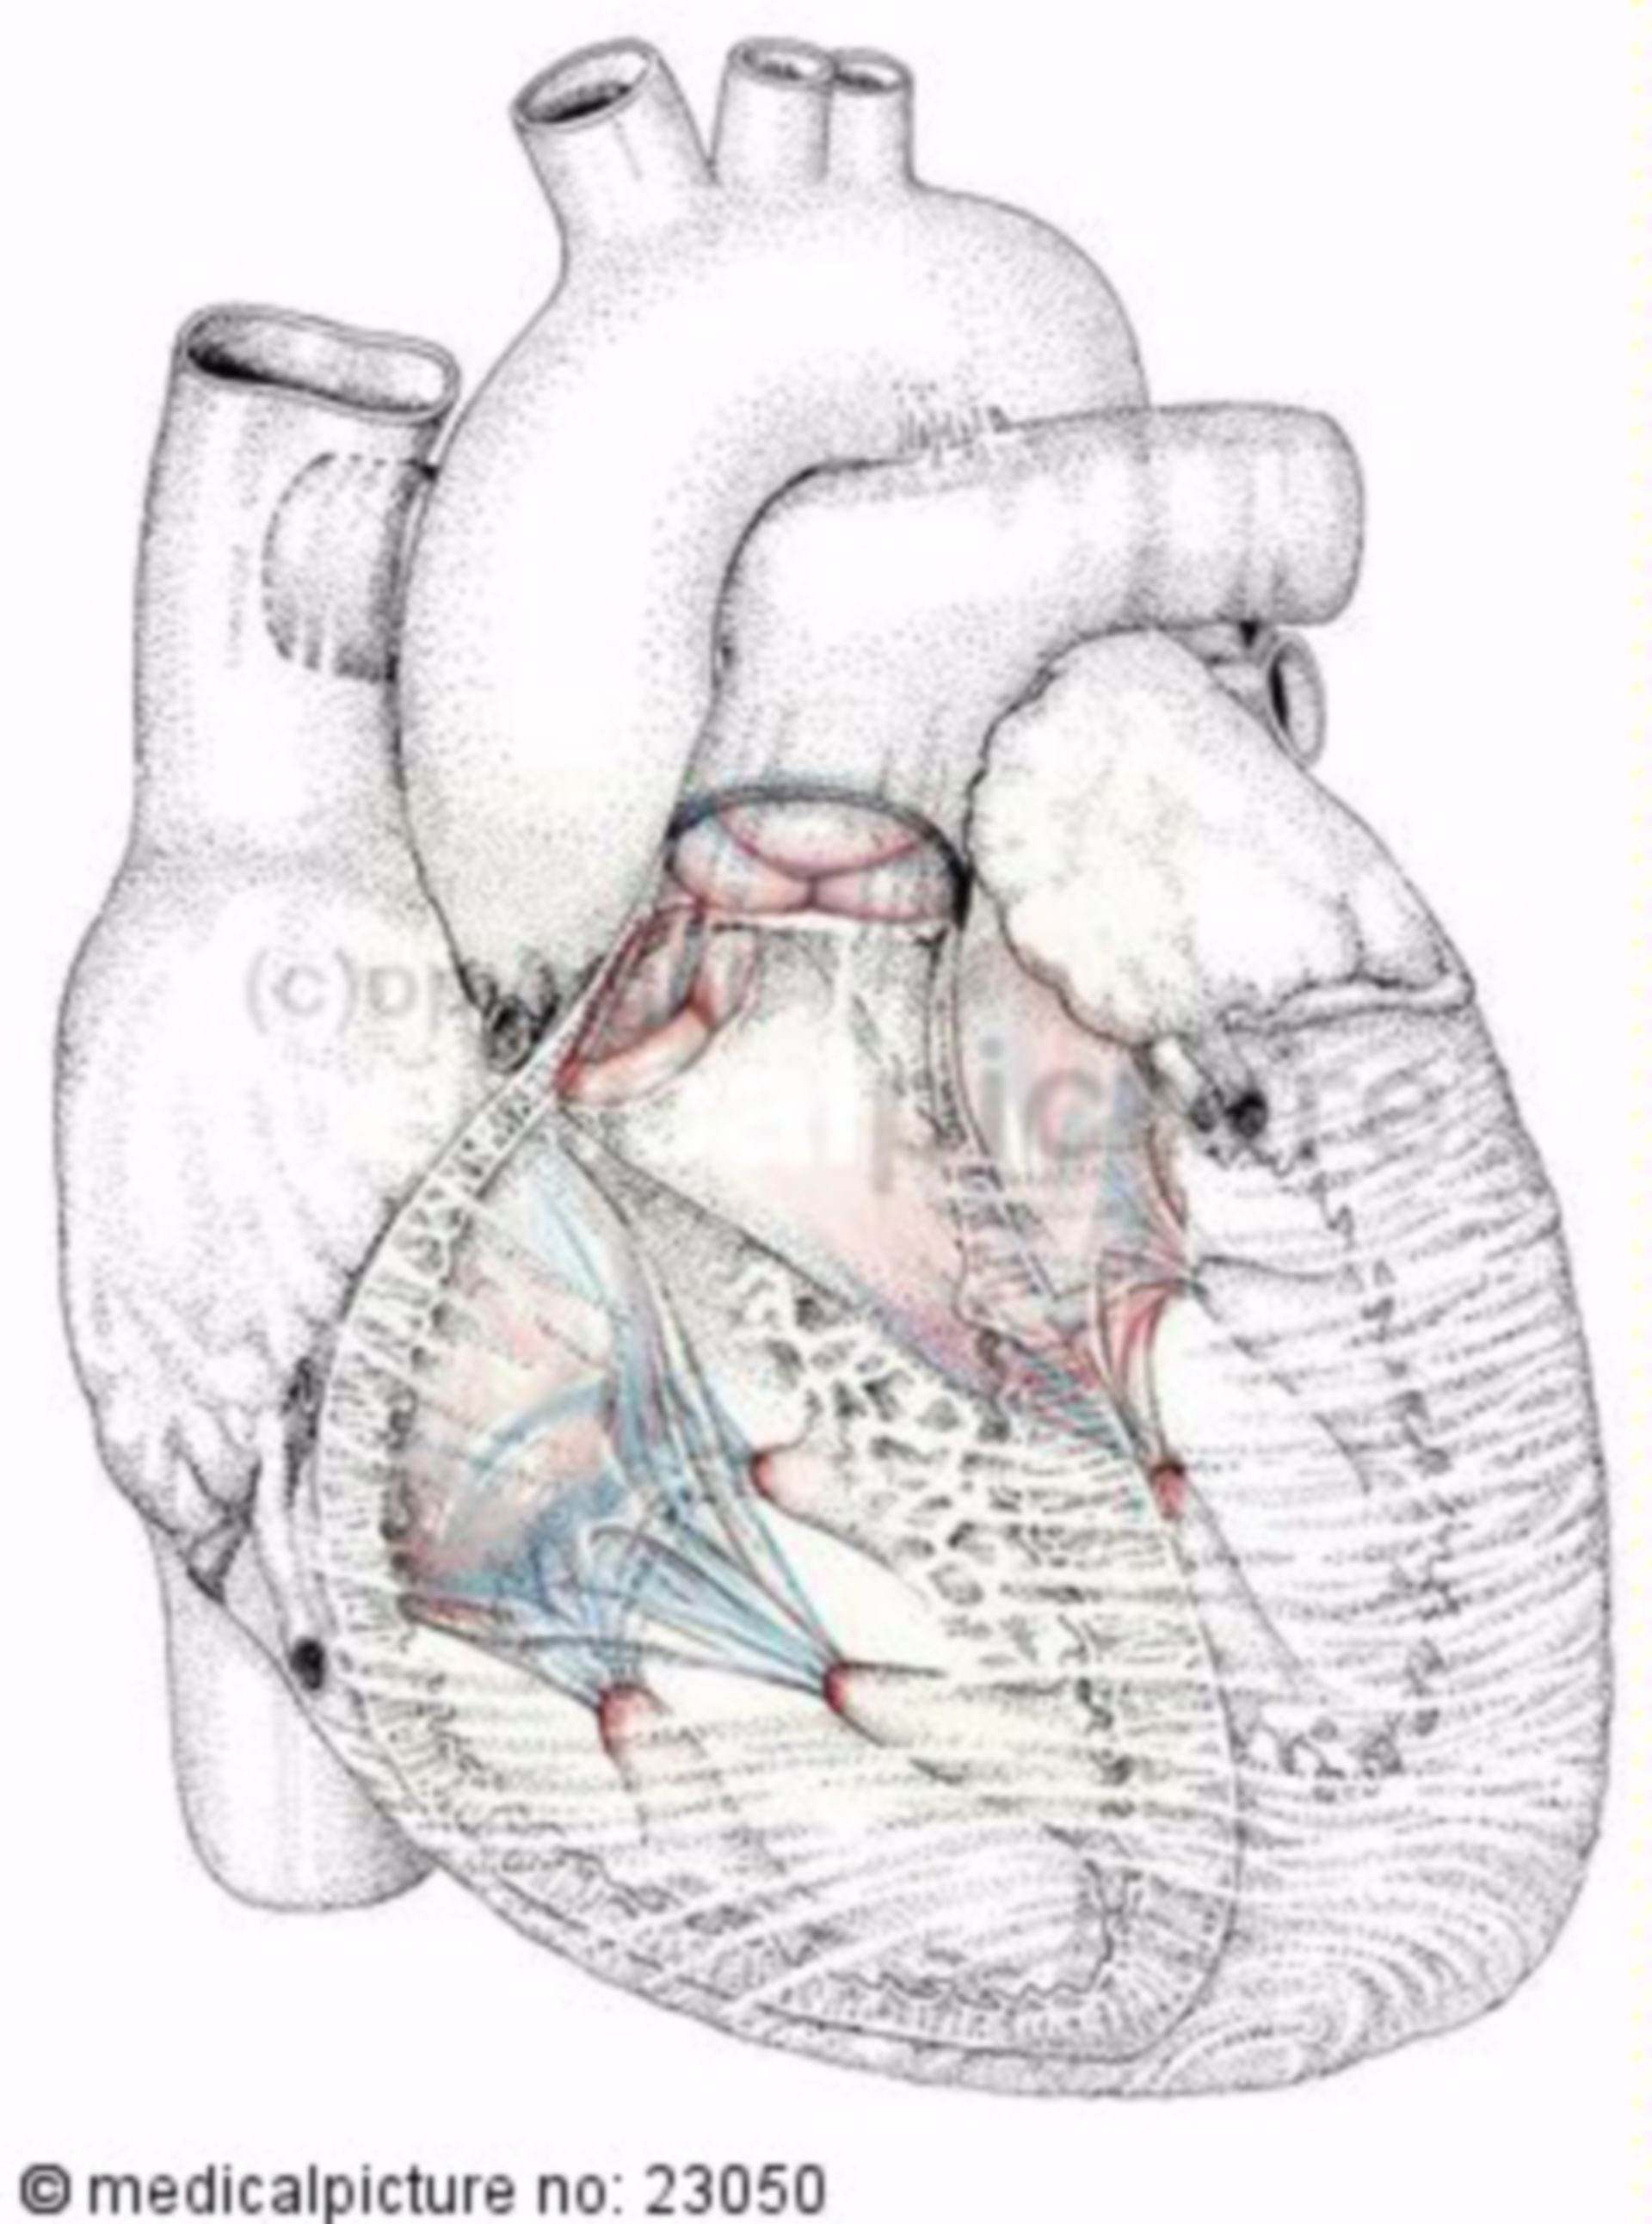 Heart, cardiac valves